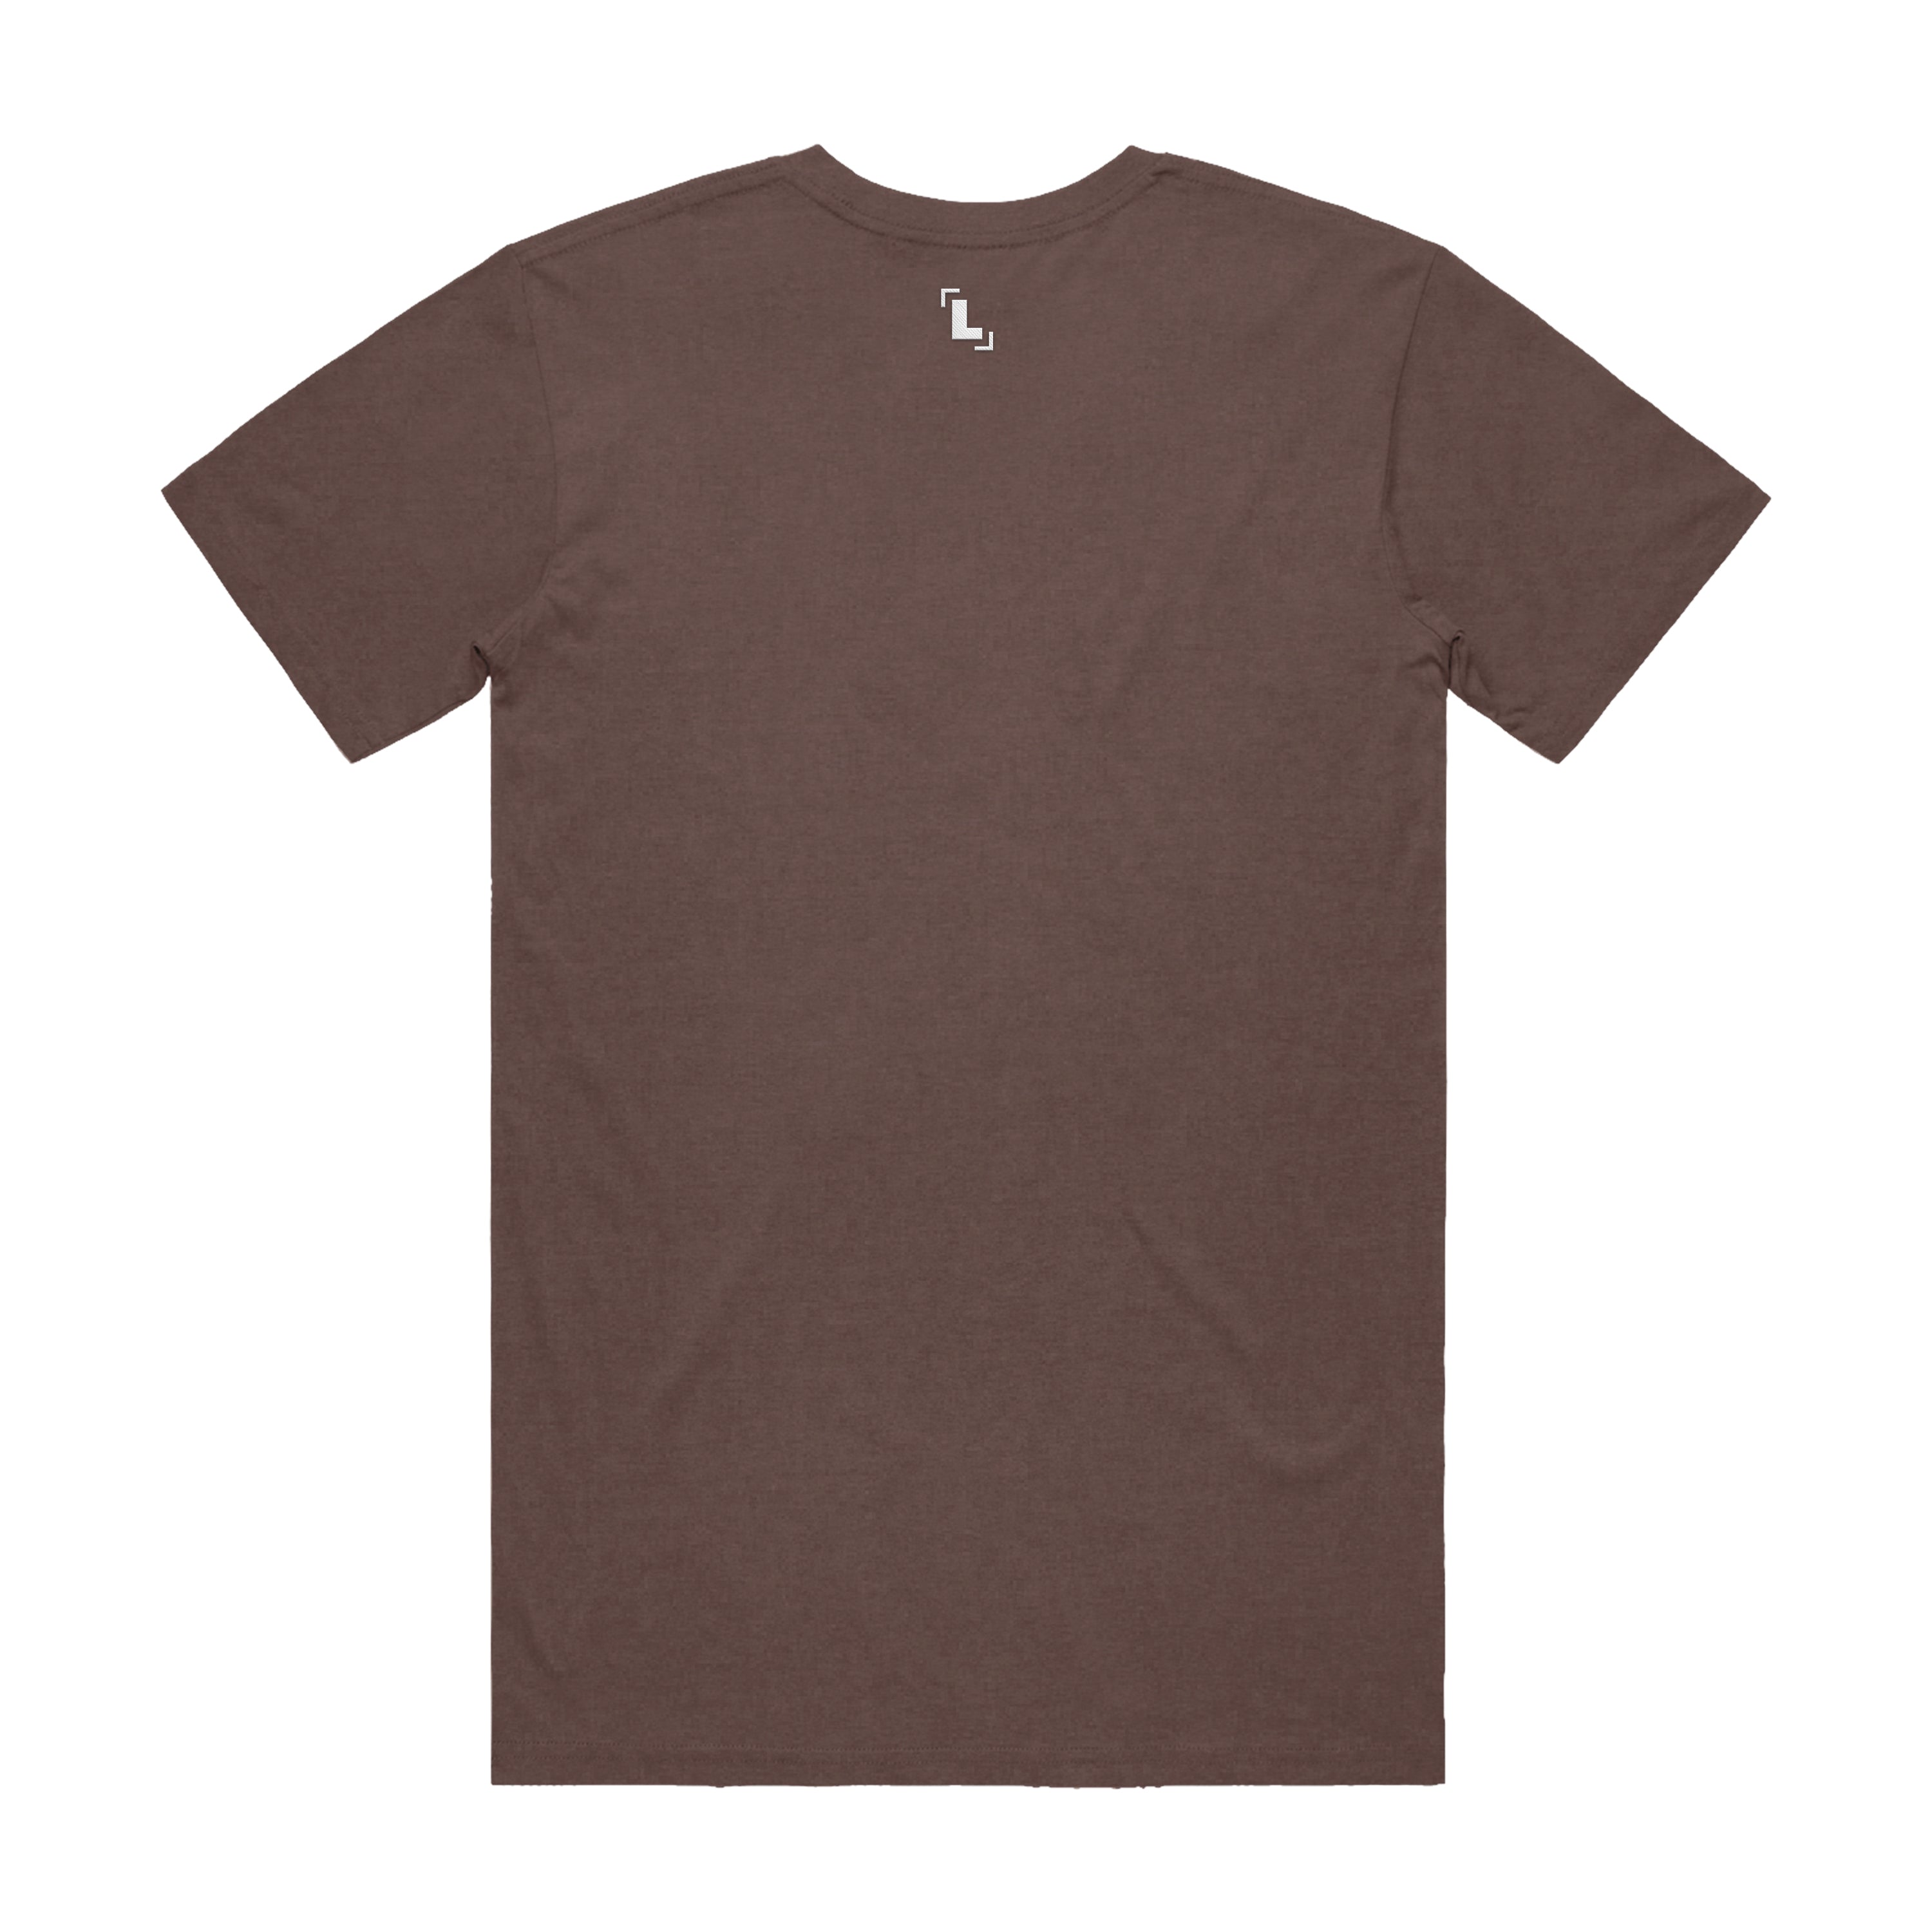 Tshirt - Brown Signature Premium